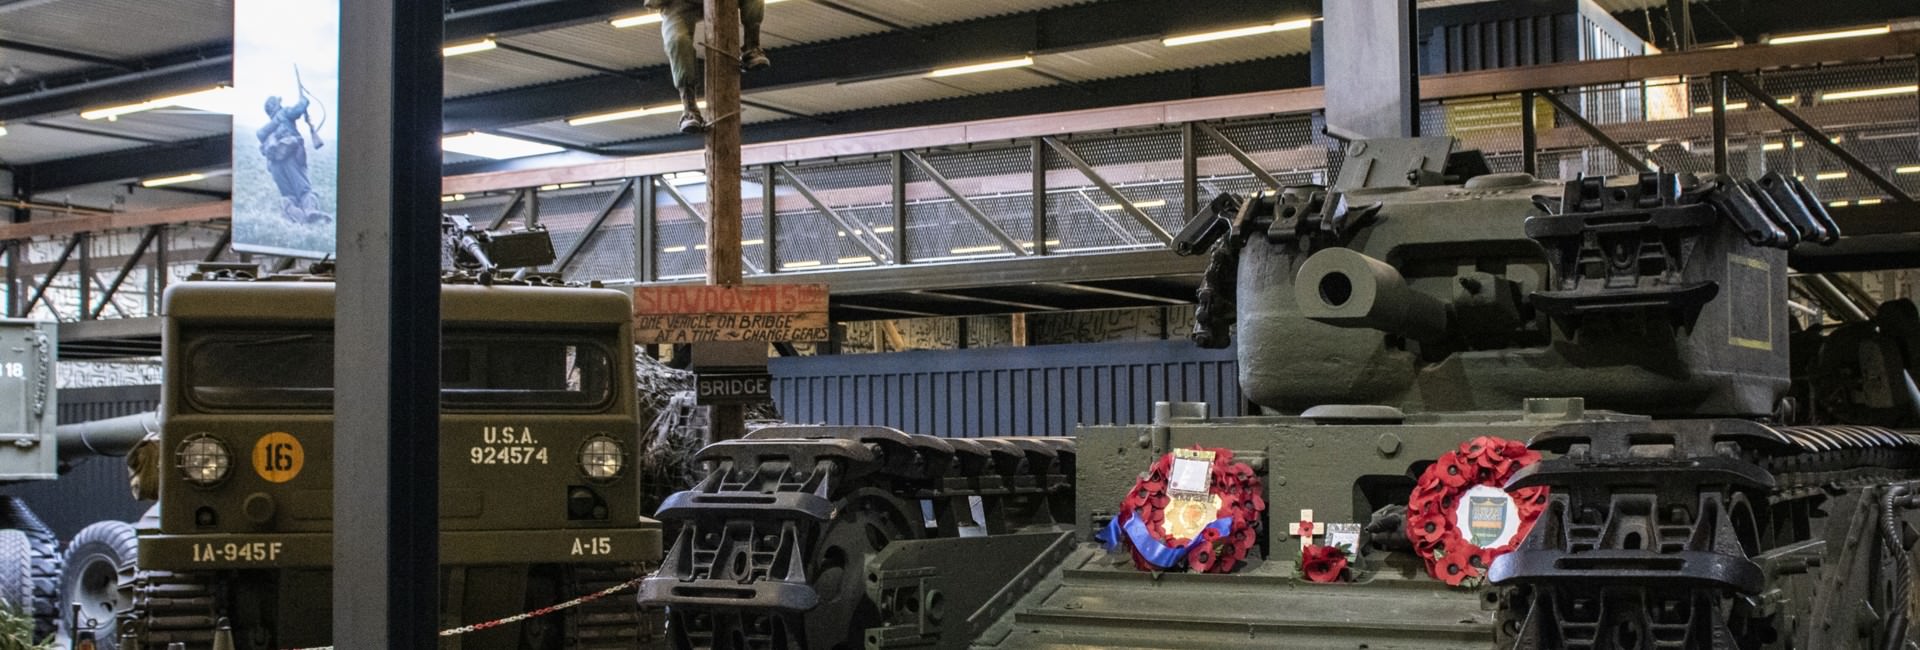 oorlogsmuseum - Sammlung Militärfahrzeuge